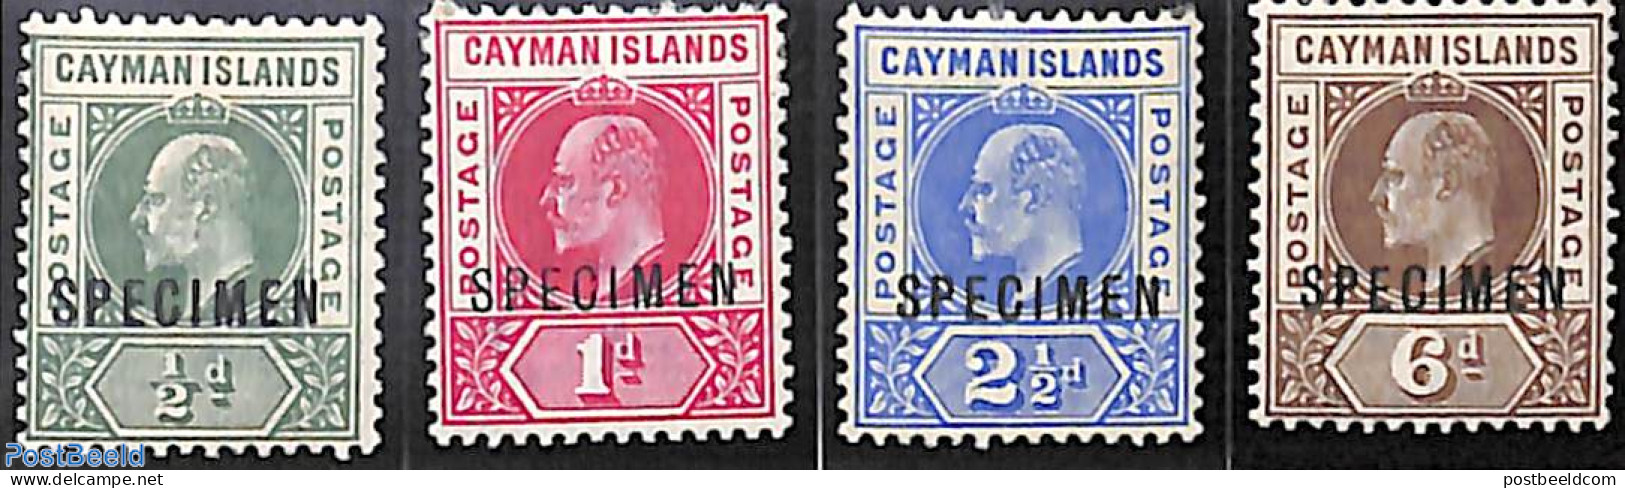 Cayman Islands 1901 Definitives, King Edward VII 4v, SPECIMEN, Unused (hinged) - Kaimaninseln